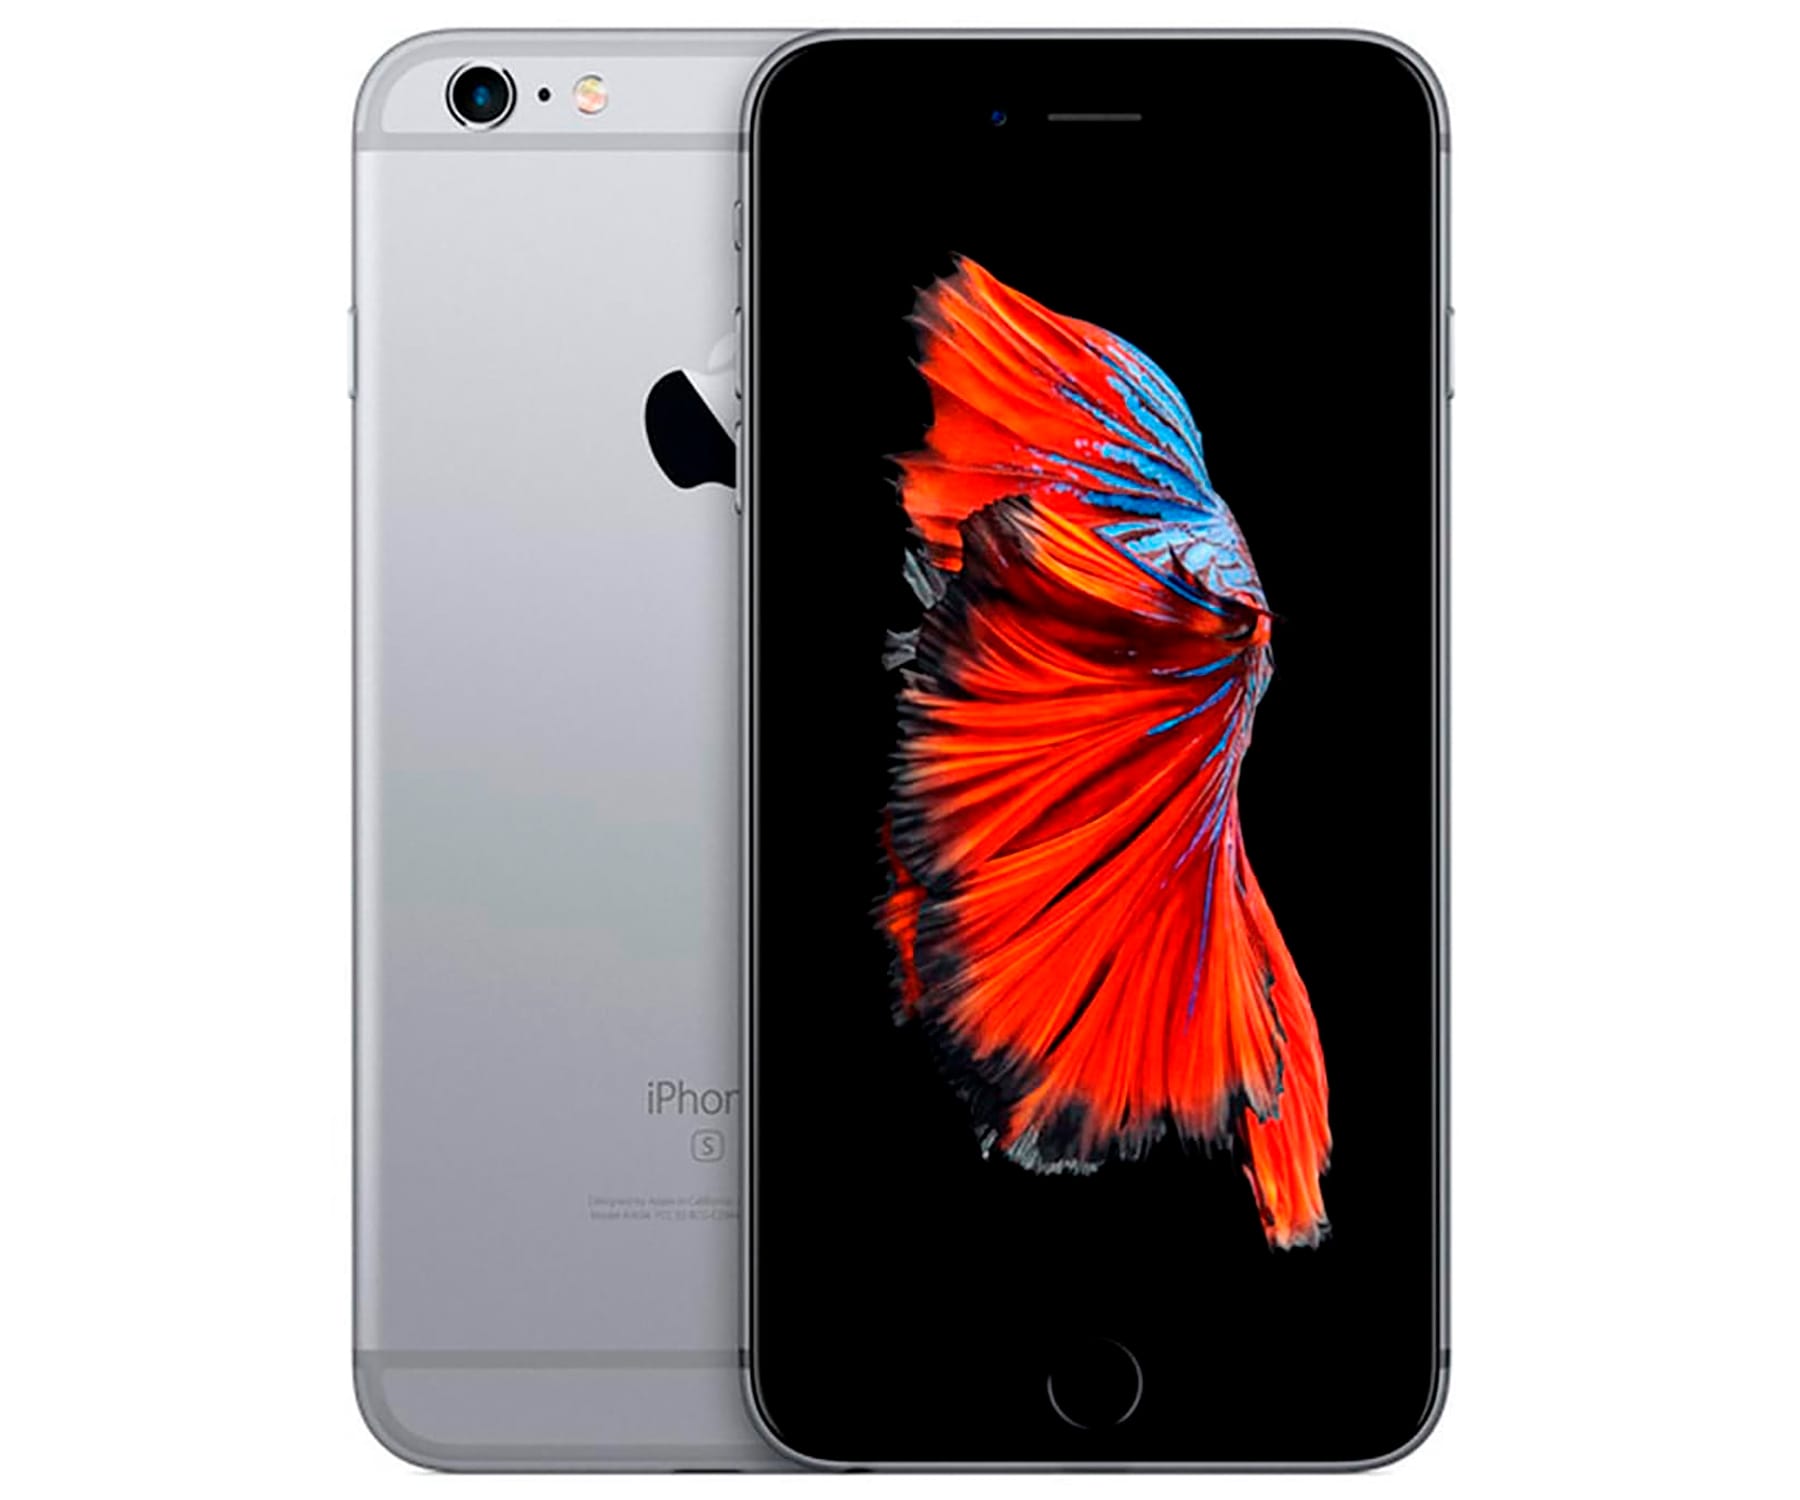 Apple iPhone 6S Space Grey / Reacondicionado / 2+64GB / 4.7" HD+